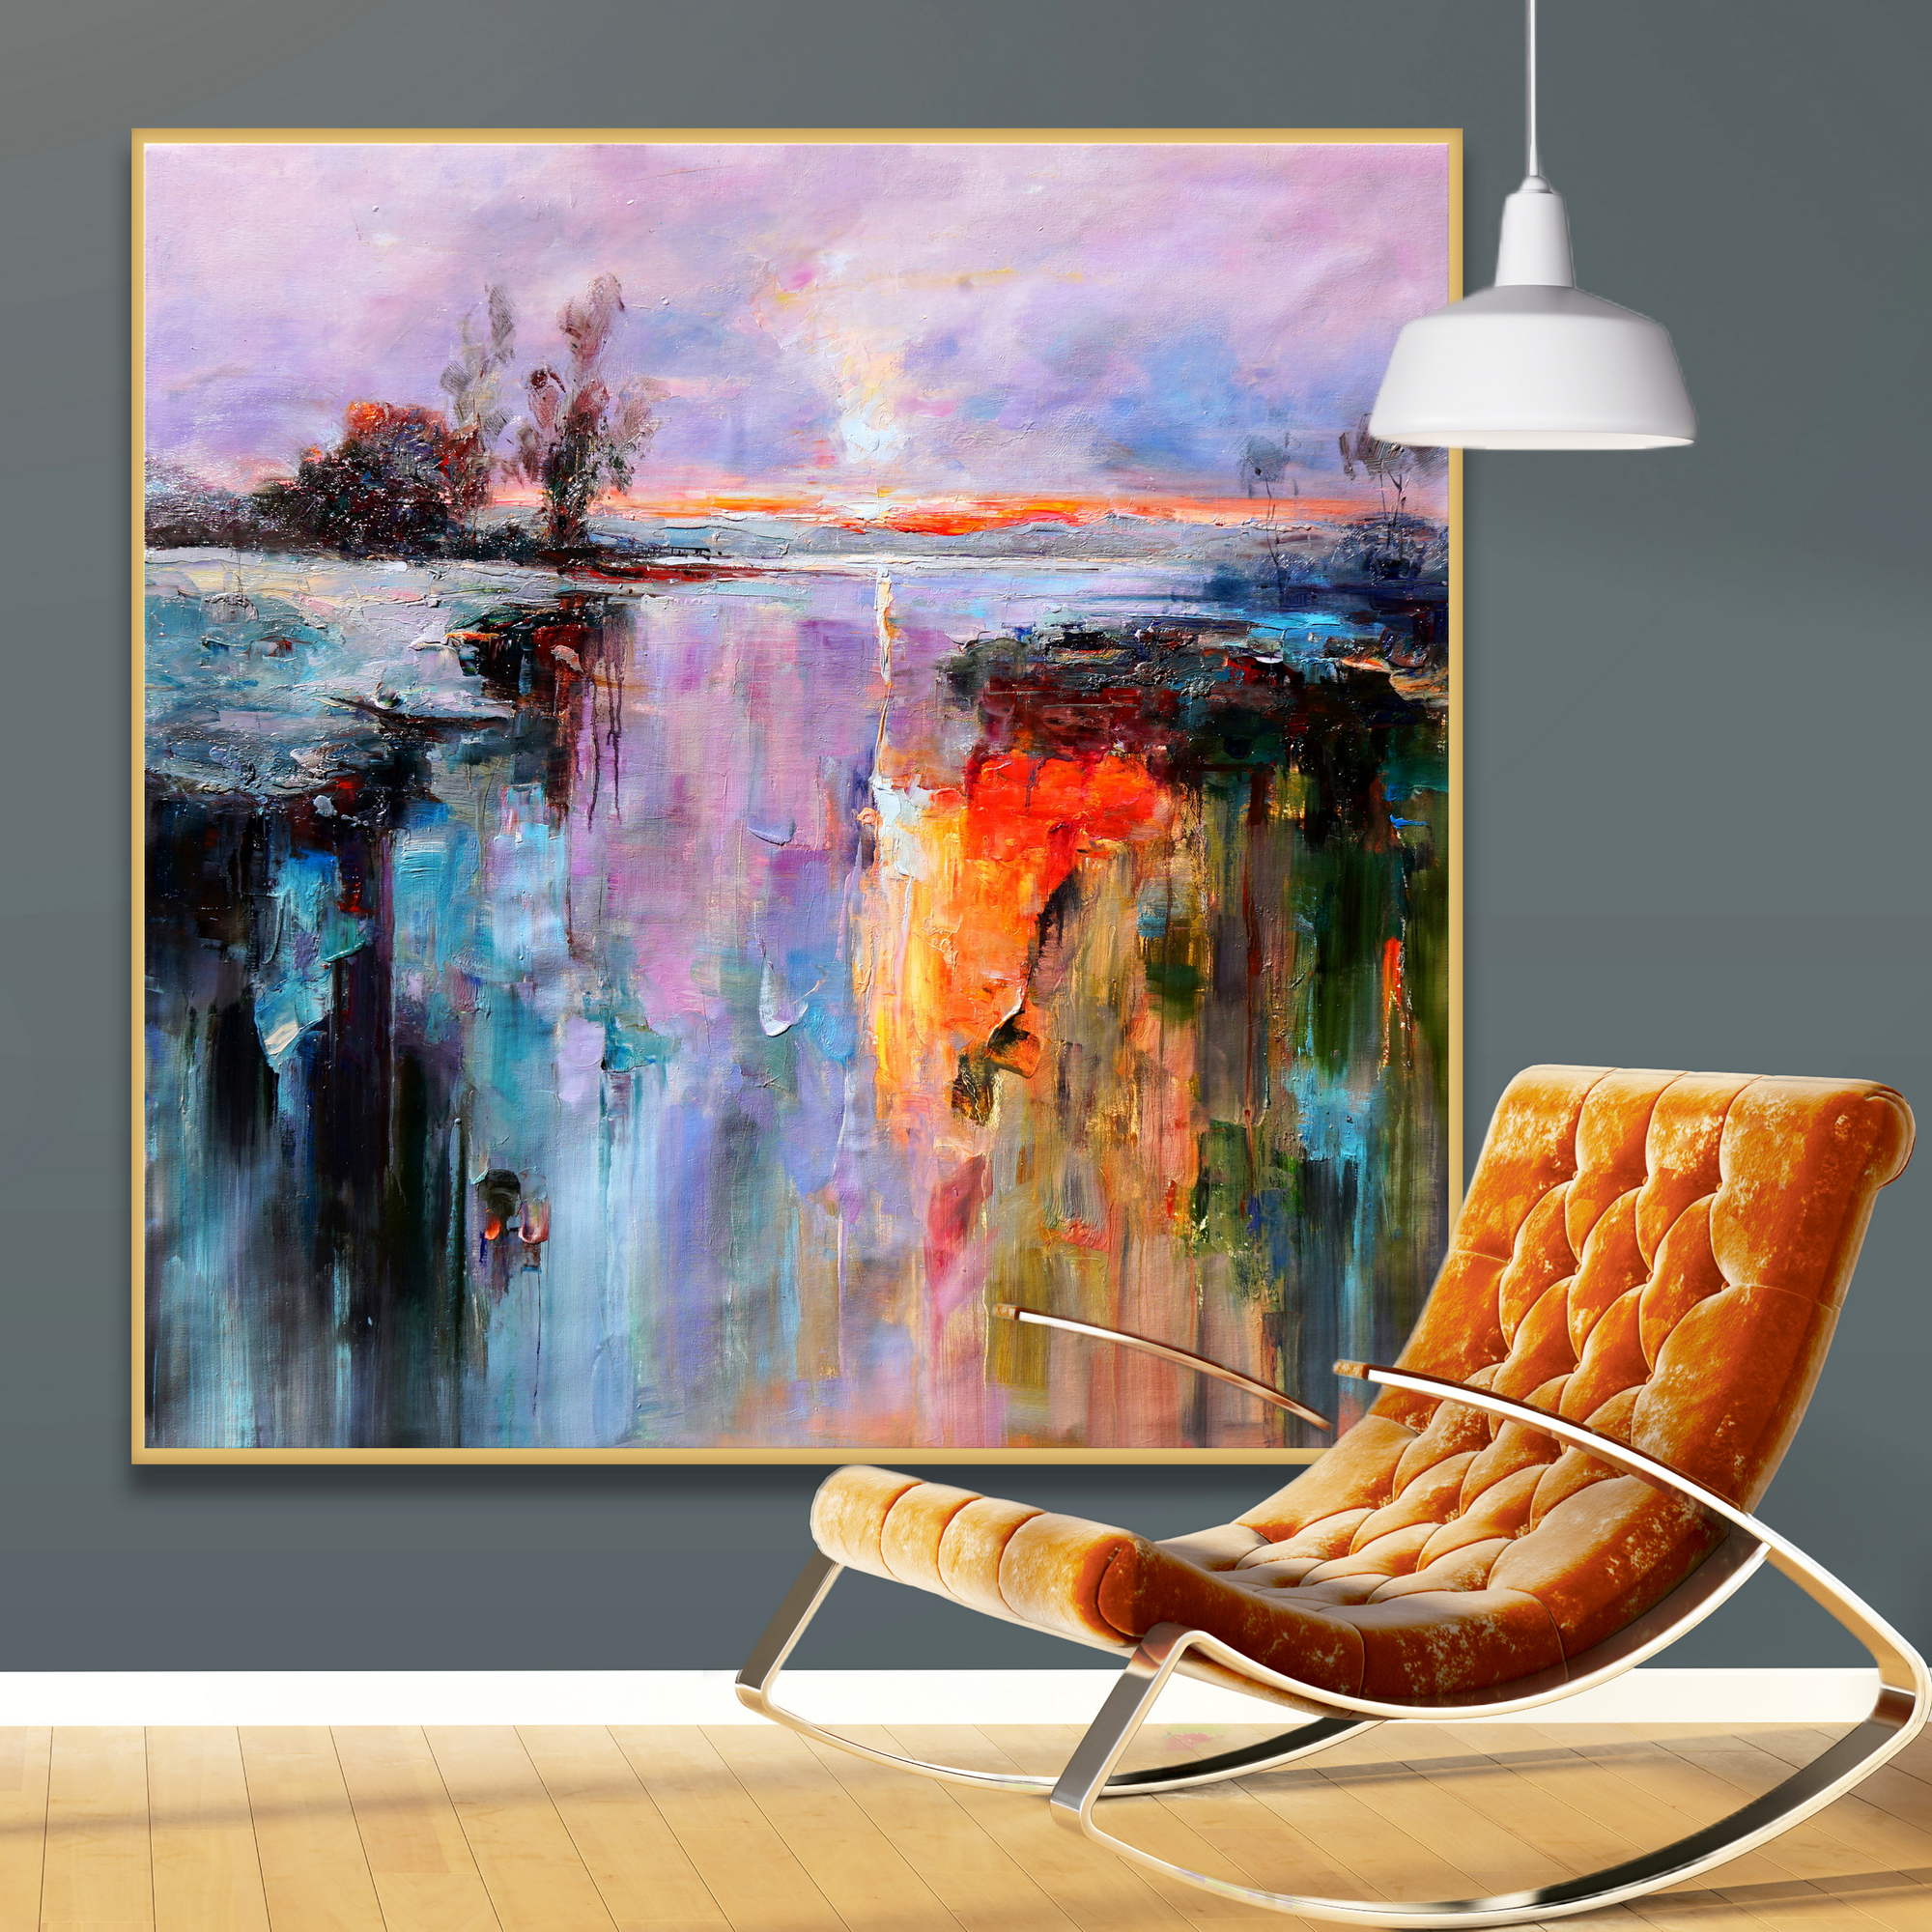 Dipinto astratto di un paesaggio riflesso nell'acqua con colori vibranti